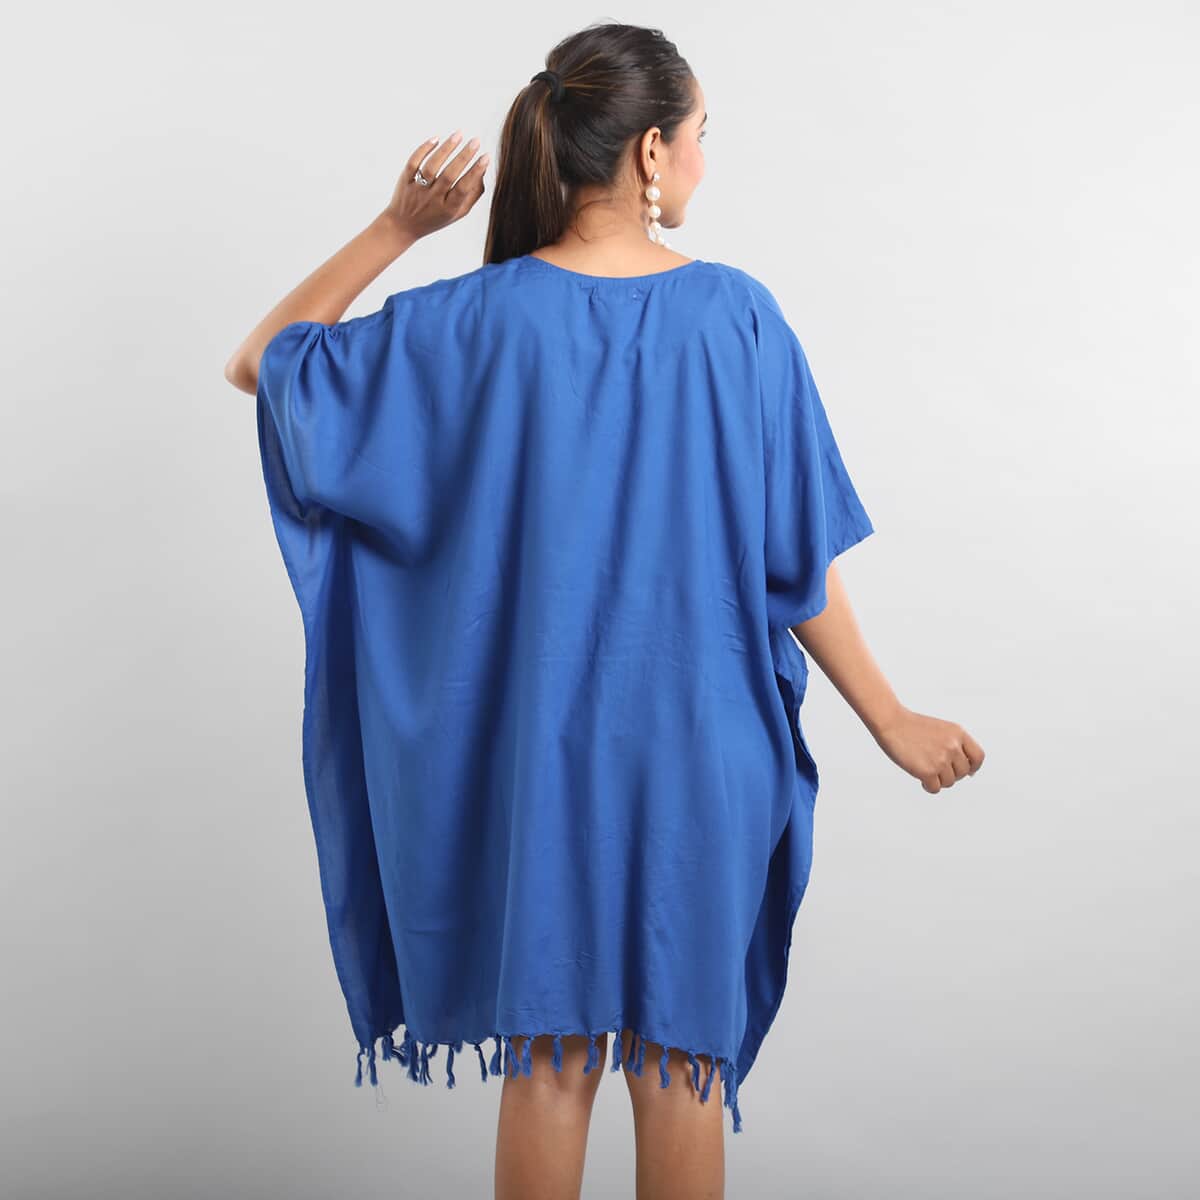 JOVIE Blue Sequin and Fringe Embellishments V-Neck Kaftan Top - One Size Fits Most (35"x45") image number 2